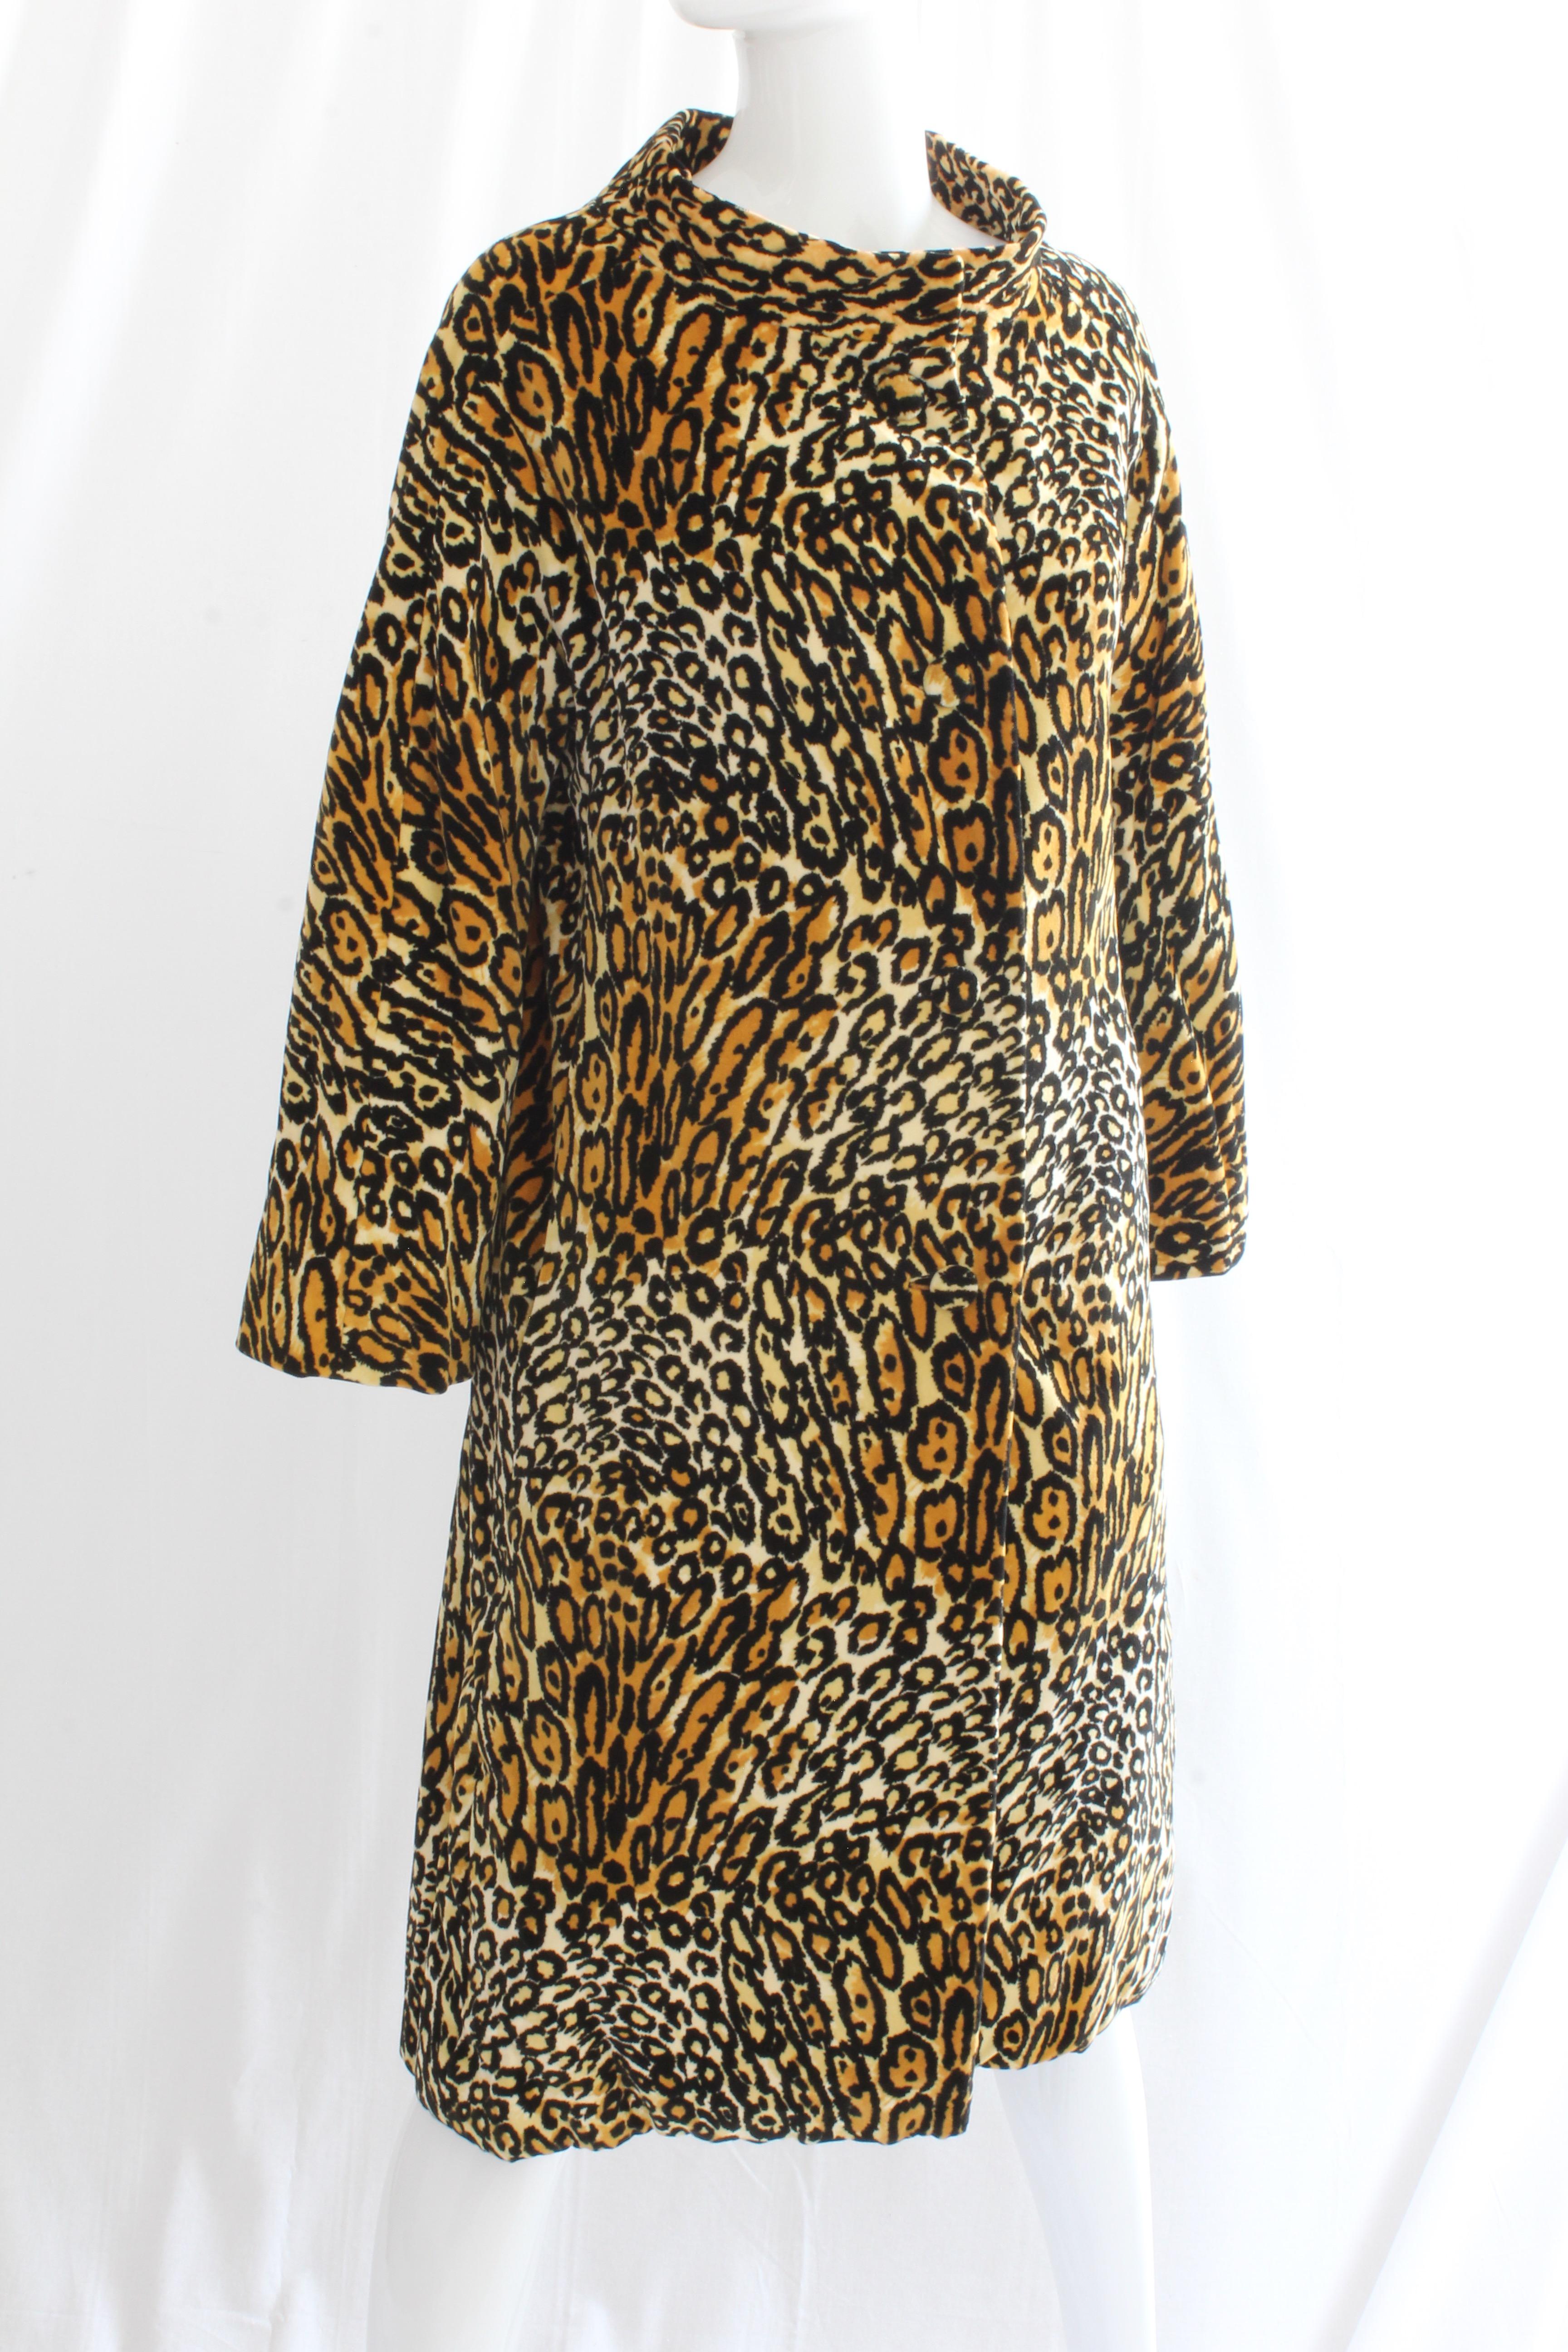 Black Bill Blass for Bond Street Velvet Leopard Print Coat 1970s Sz M